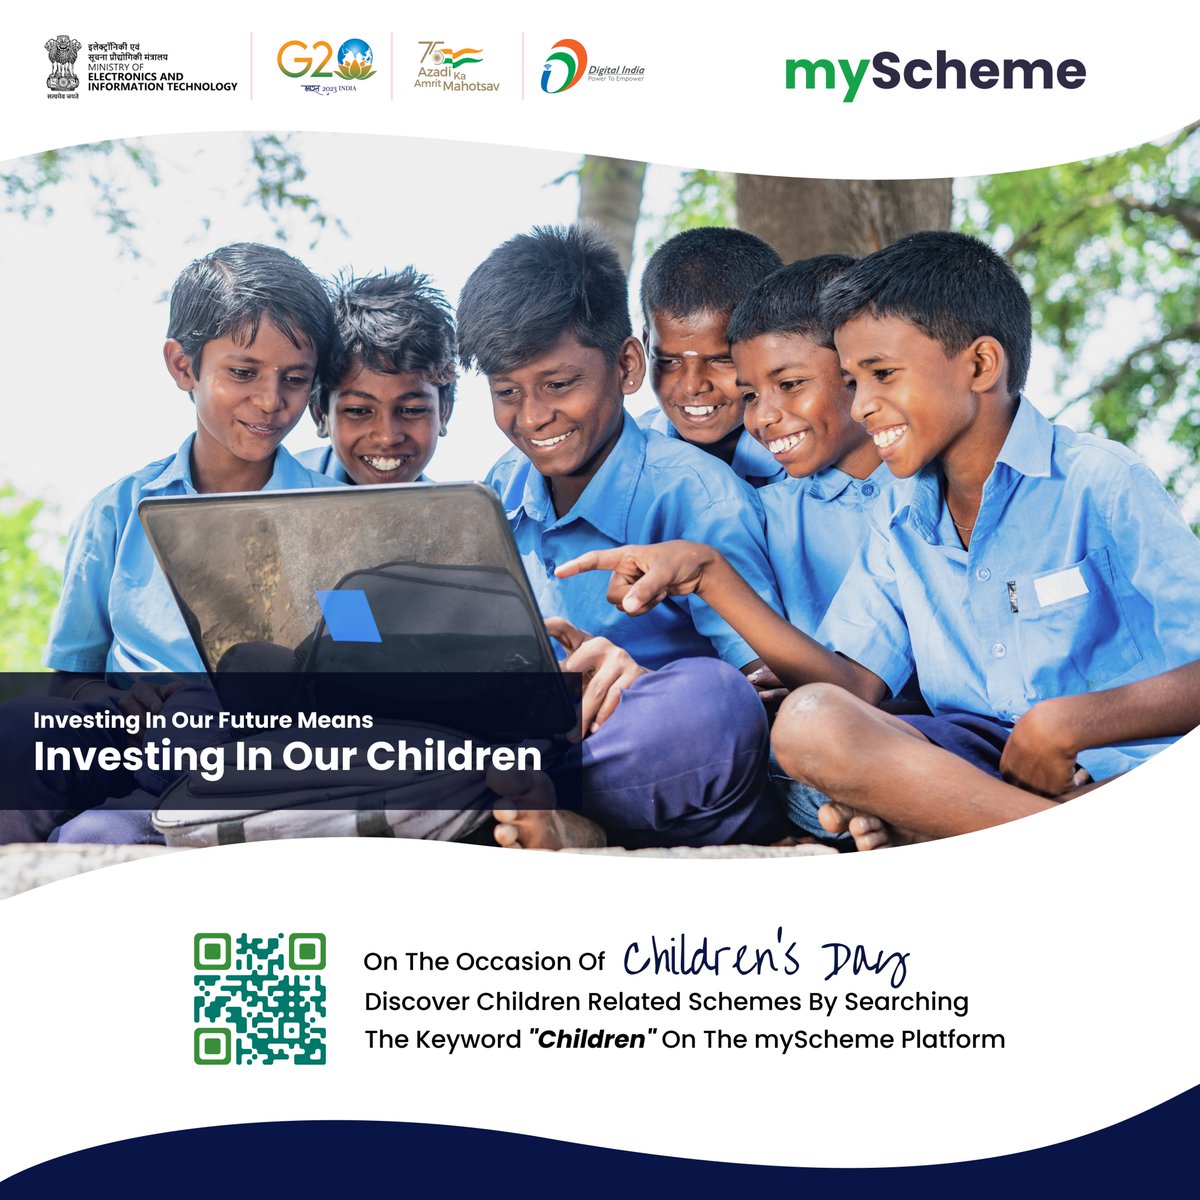 Happy Children's Day! Visit: myscheme.gov.in Discover Children-related schemes by searching the keyword 'Children' on the myScheme platform. #schemesforyour #myScheme #governmentschemes #Children#HappyChildrensDay #DigitalIndia